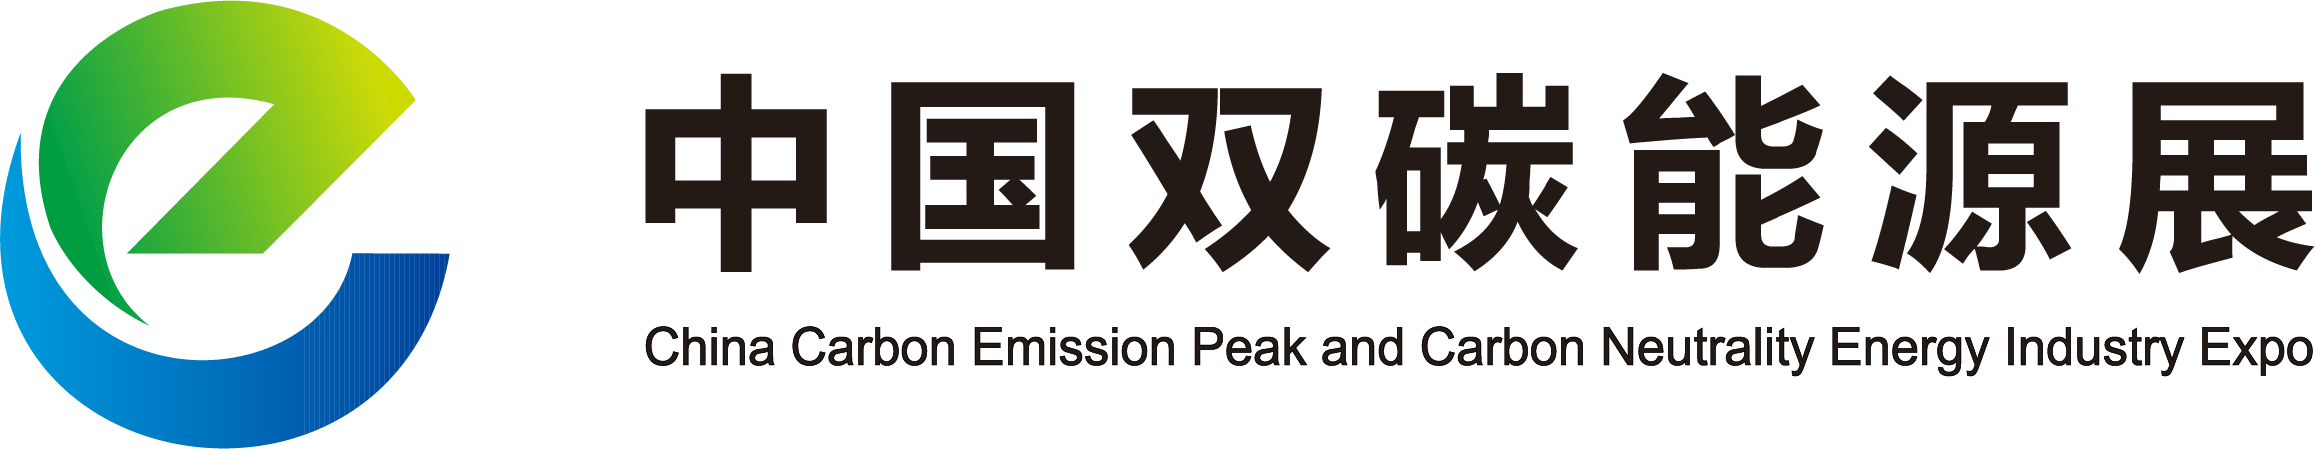 2022中国能源创新发展论坛暨中国碳达峰碳中和能源产业博览会